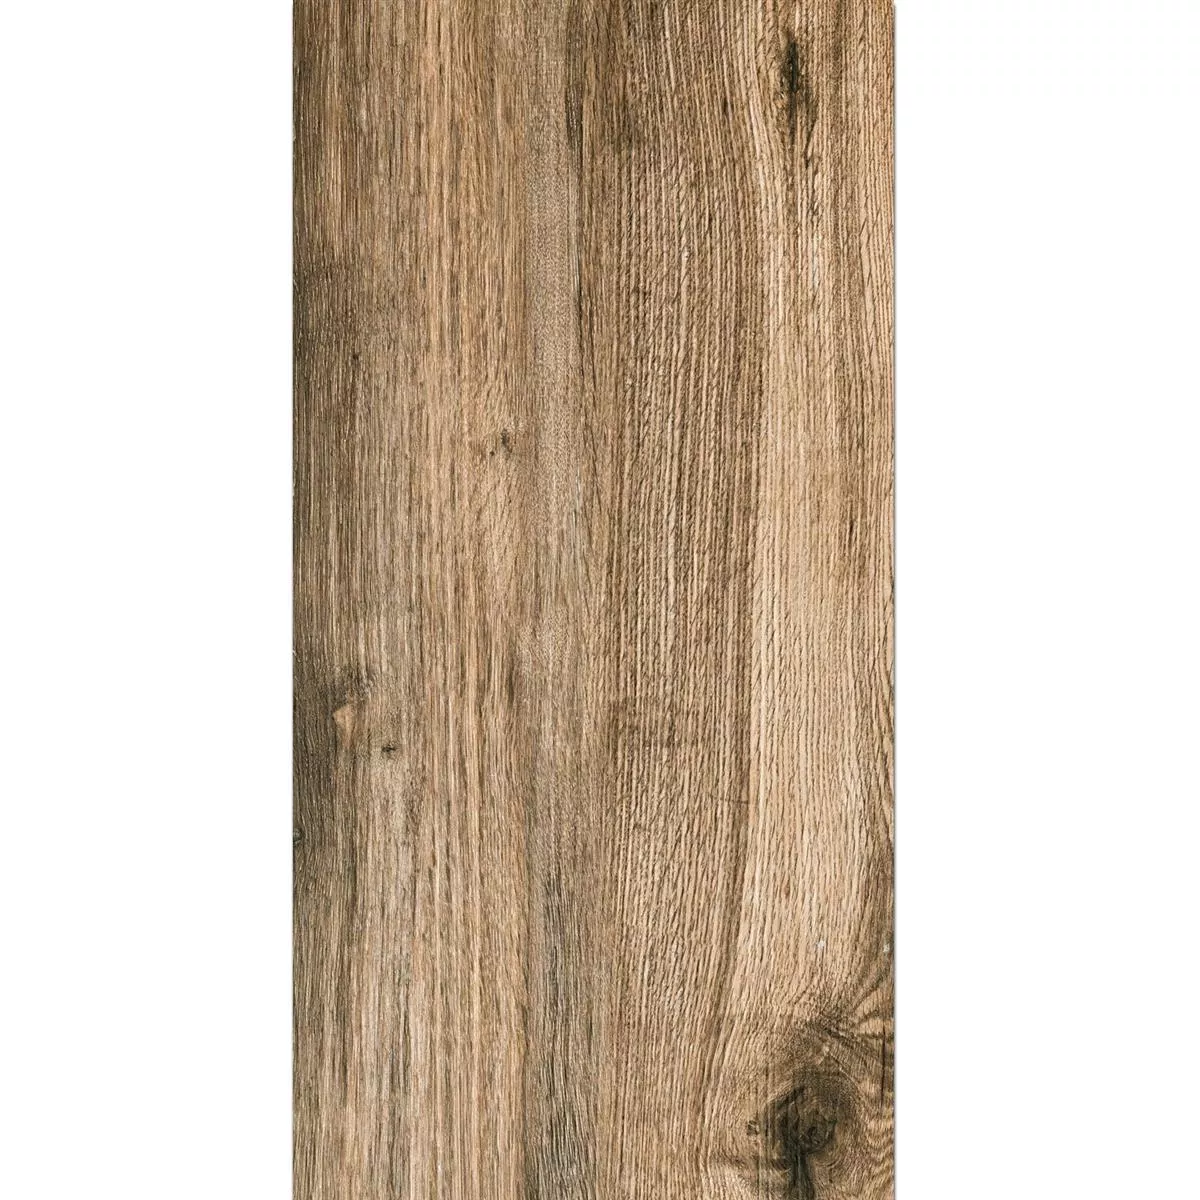 Échantillon Dalles De Terrasse Starwood Imitation Bois Oak 45x90cm